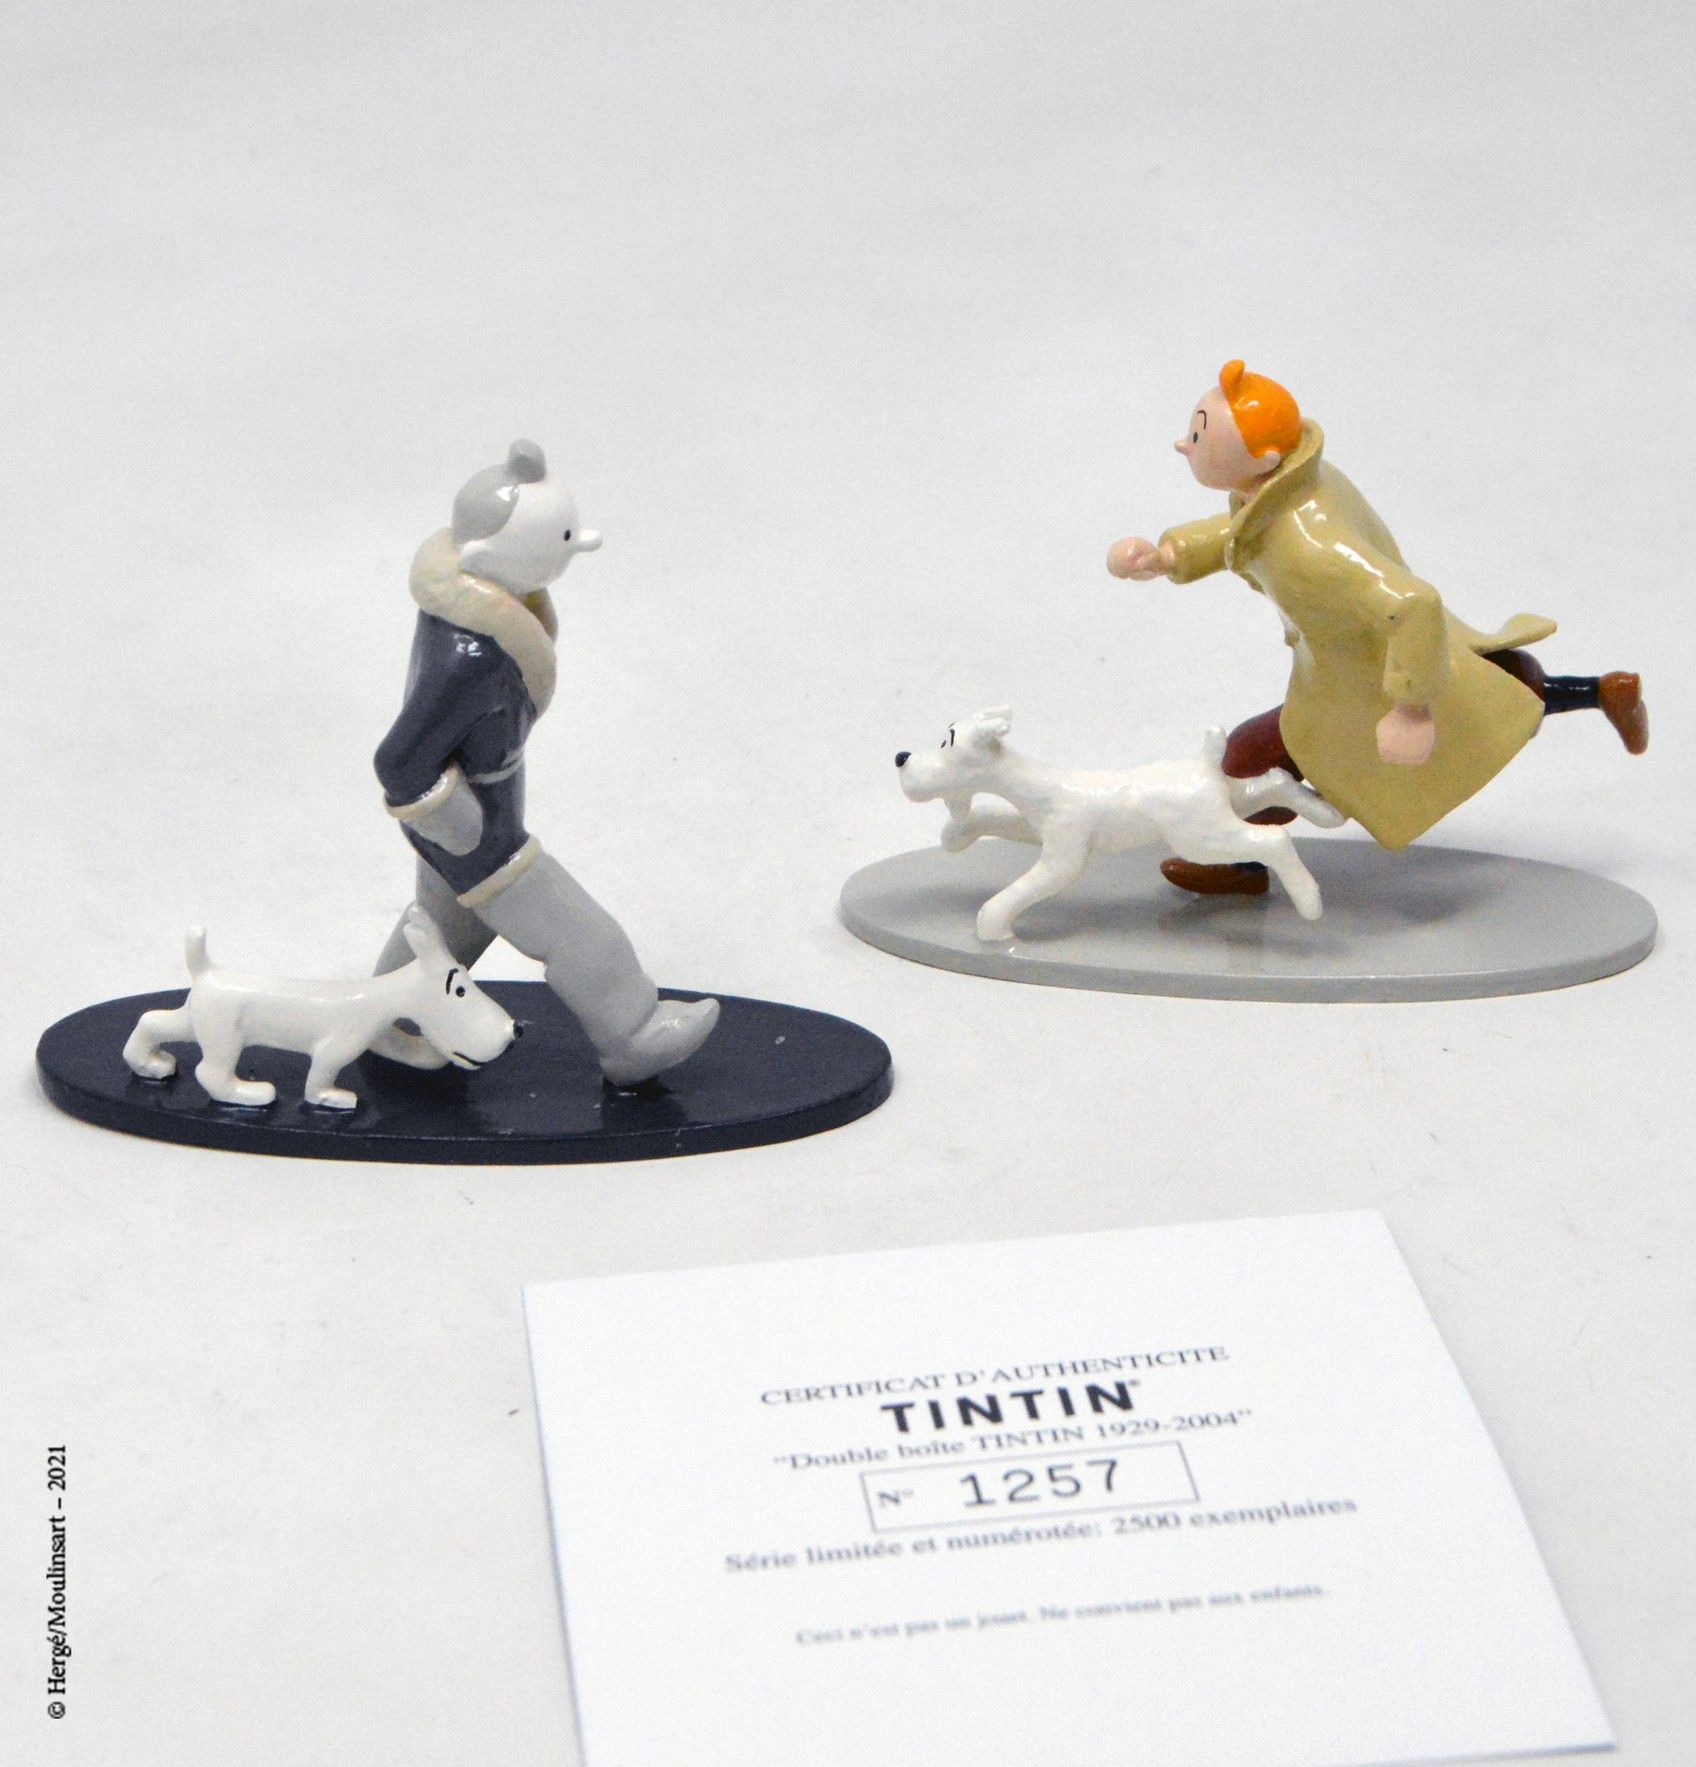 TINTIN HERGÉ/MOULINSART

Hergé : Moulinsart Lead/Classic Collection

Double box &hellip;